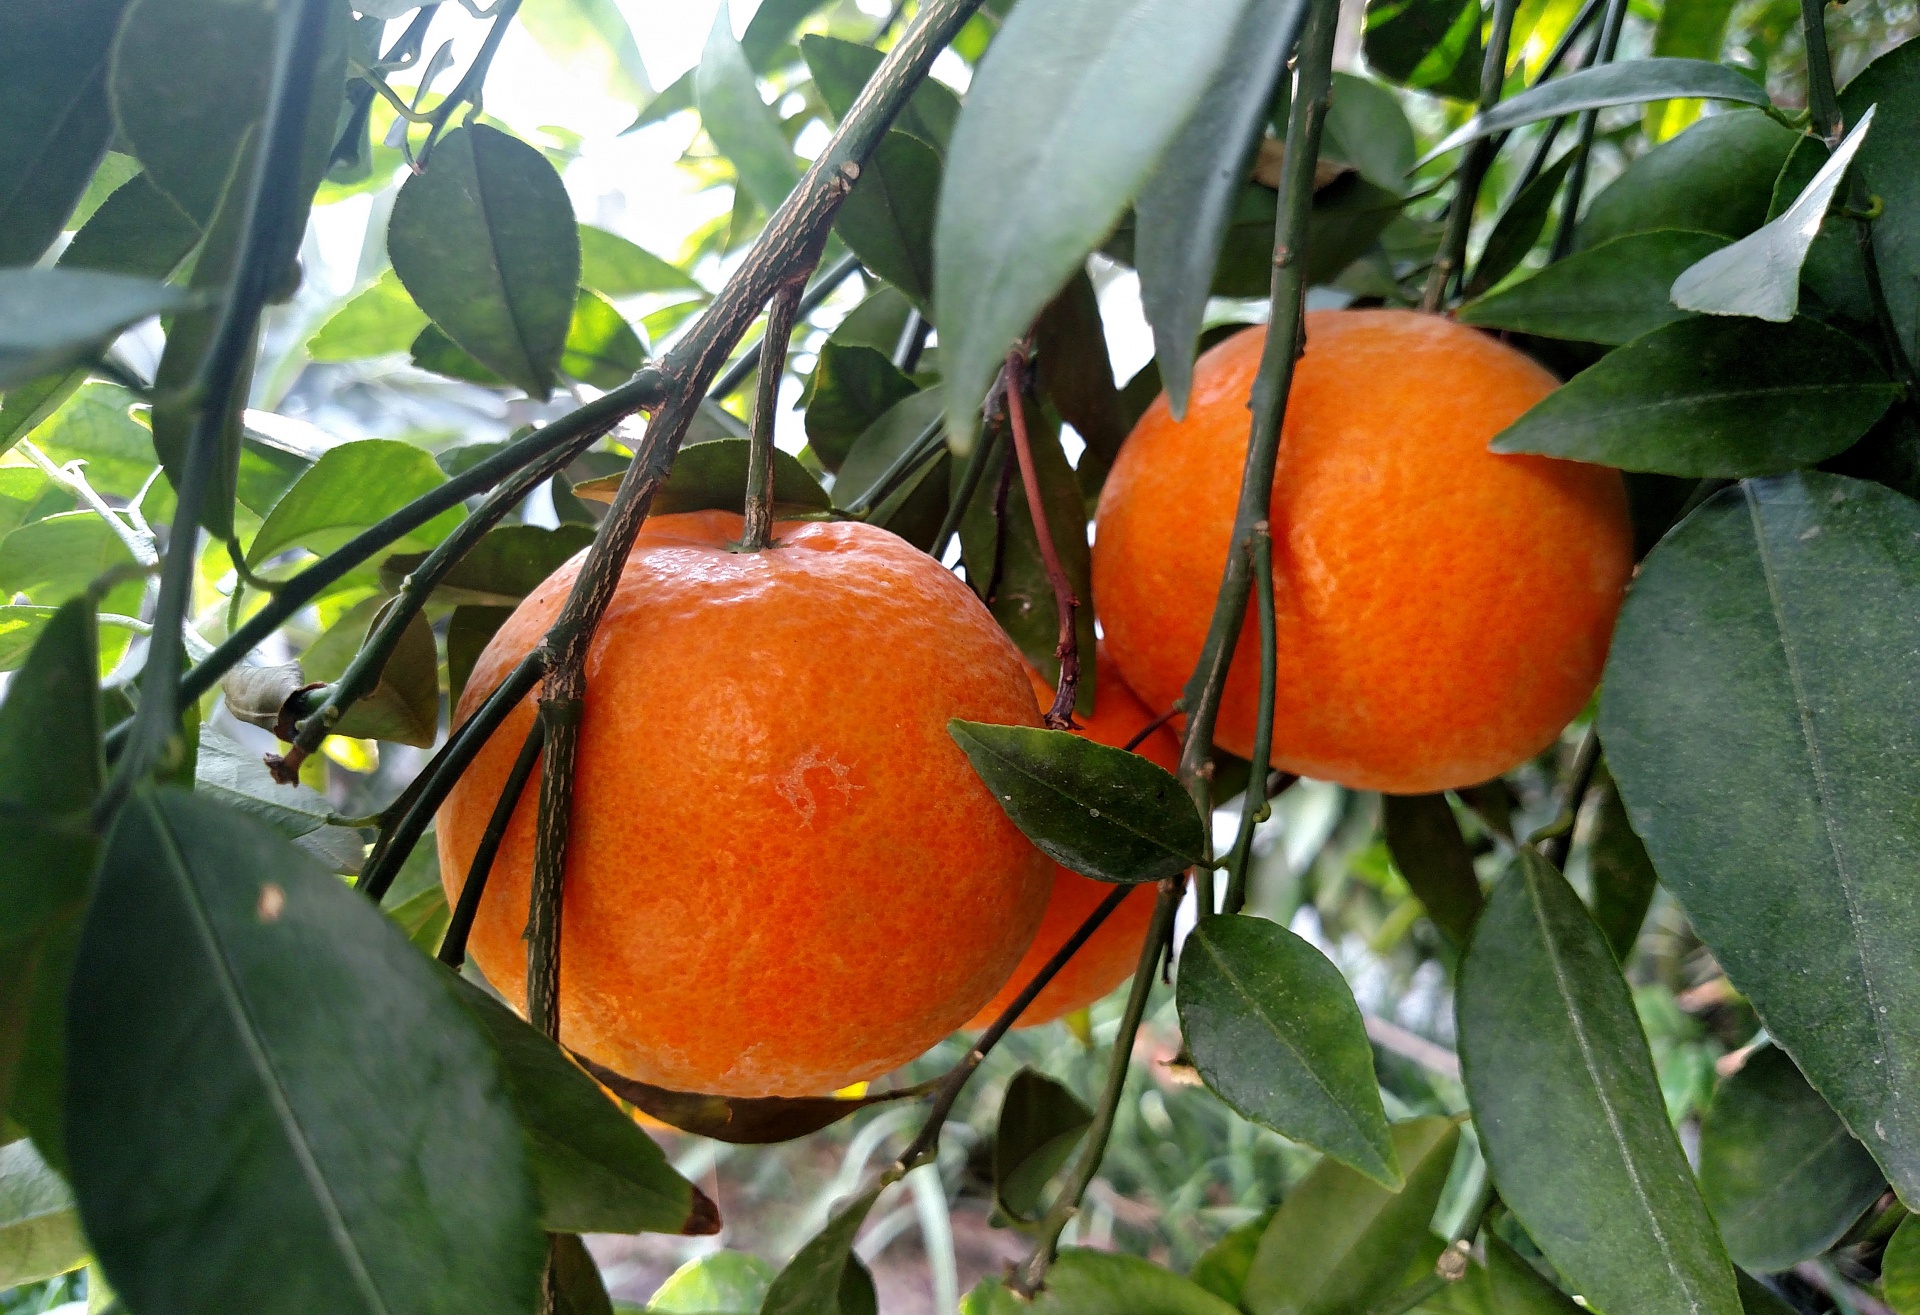 Perfumed Oranges